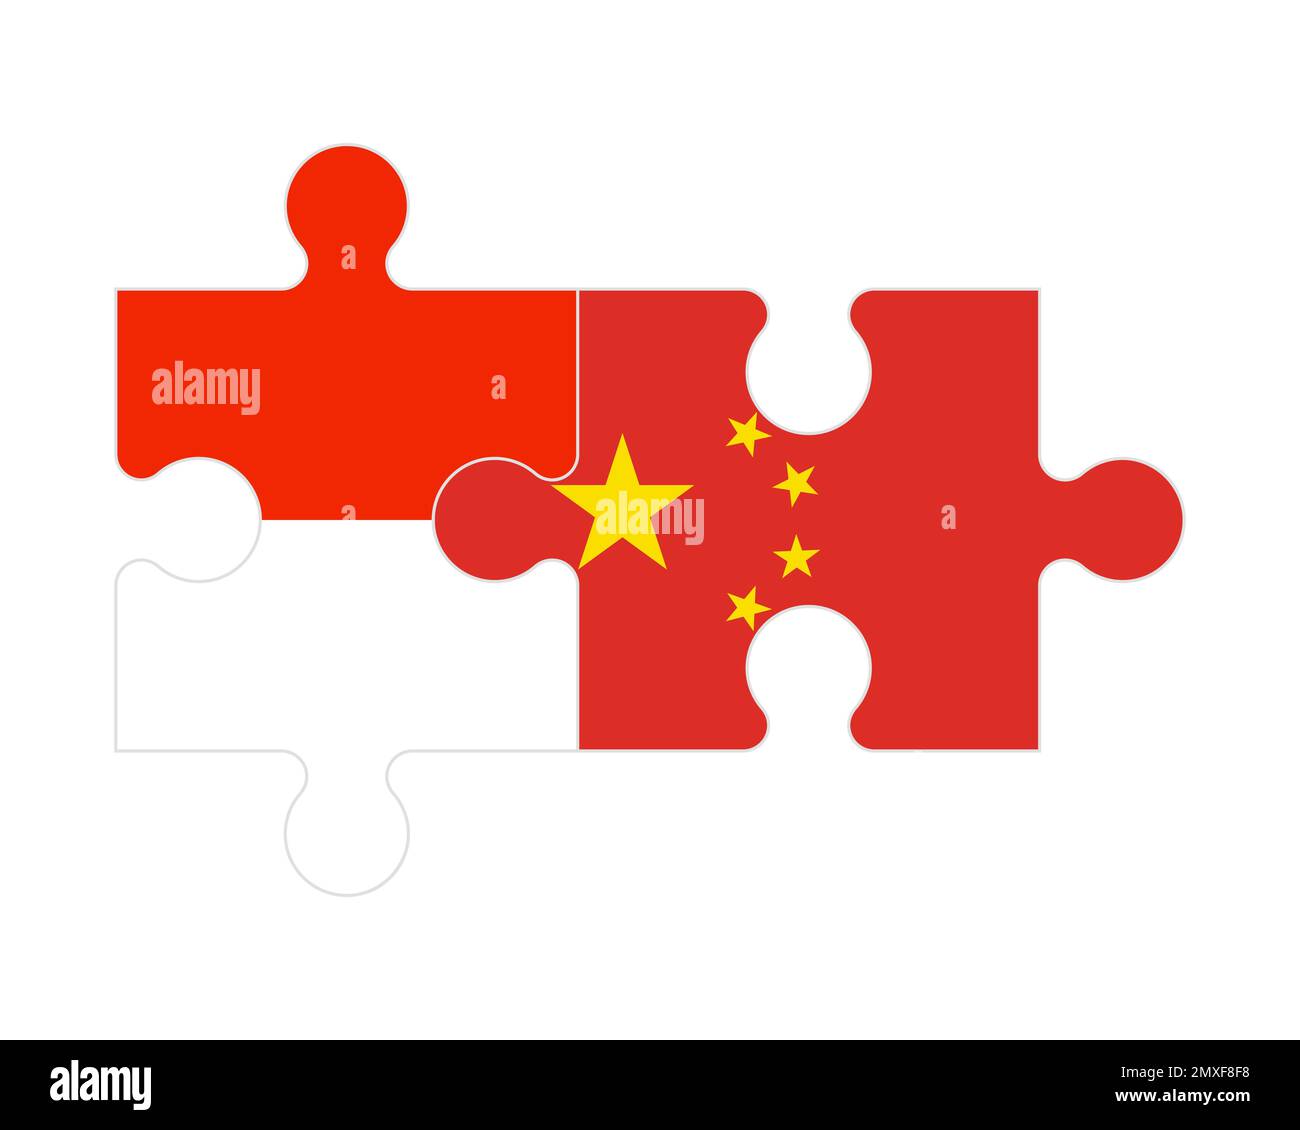 Zusammenhängendes Puzzle von Flaggen Indonesiens und Chinas, Vektor Stock Vektor